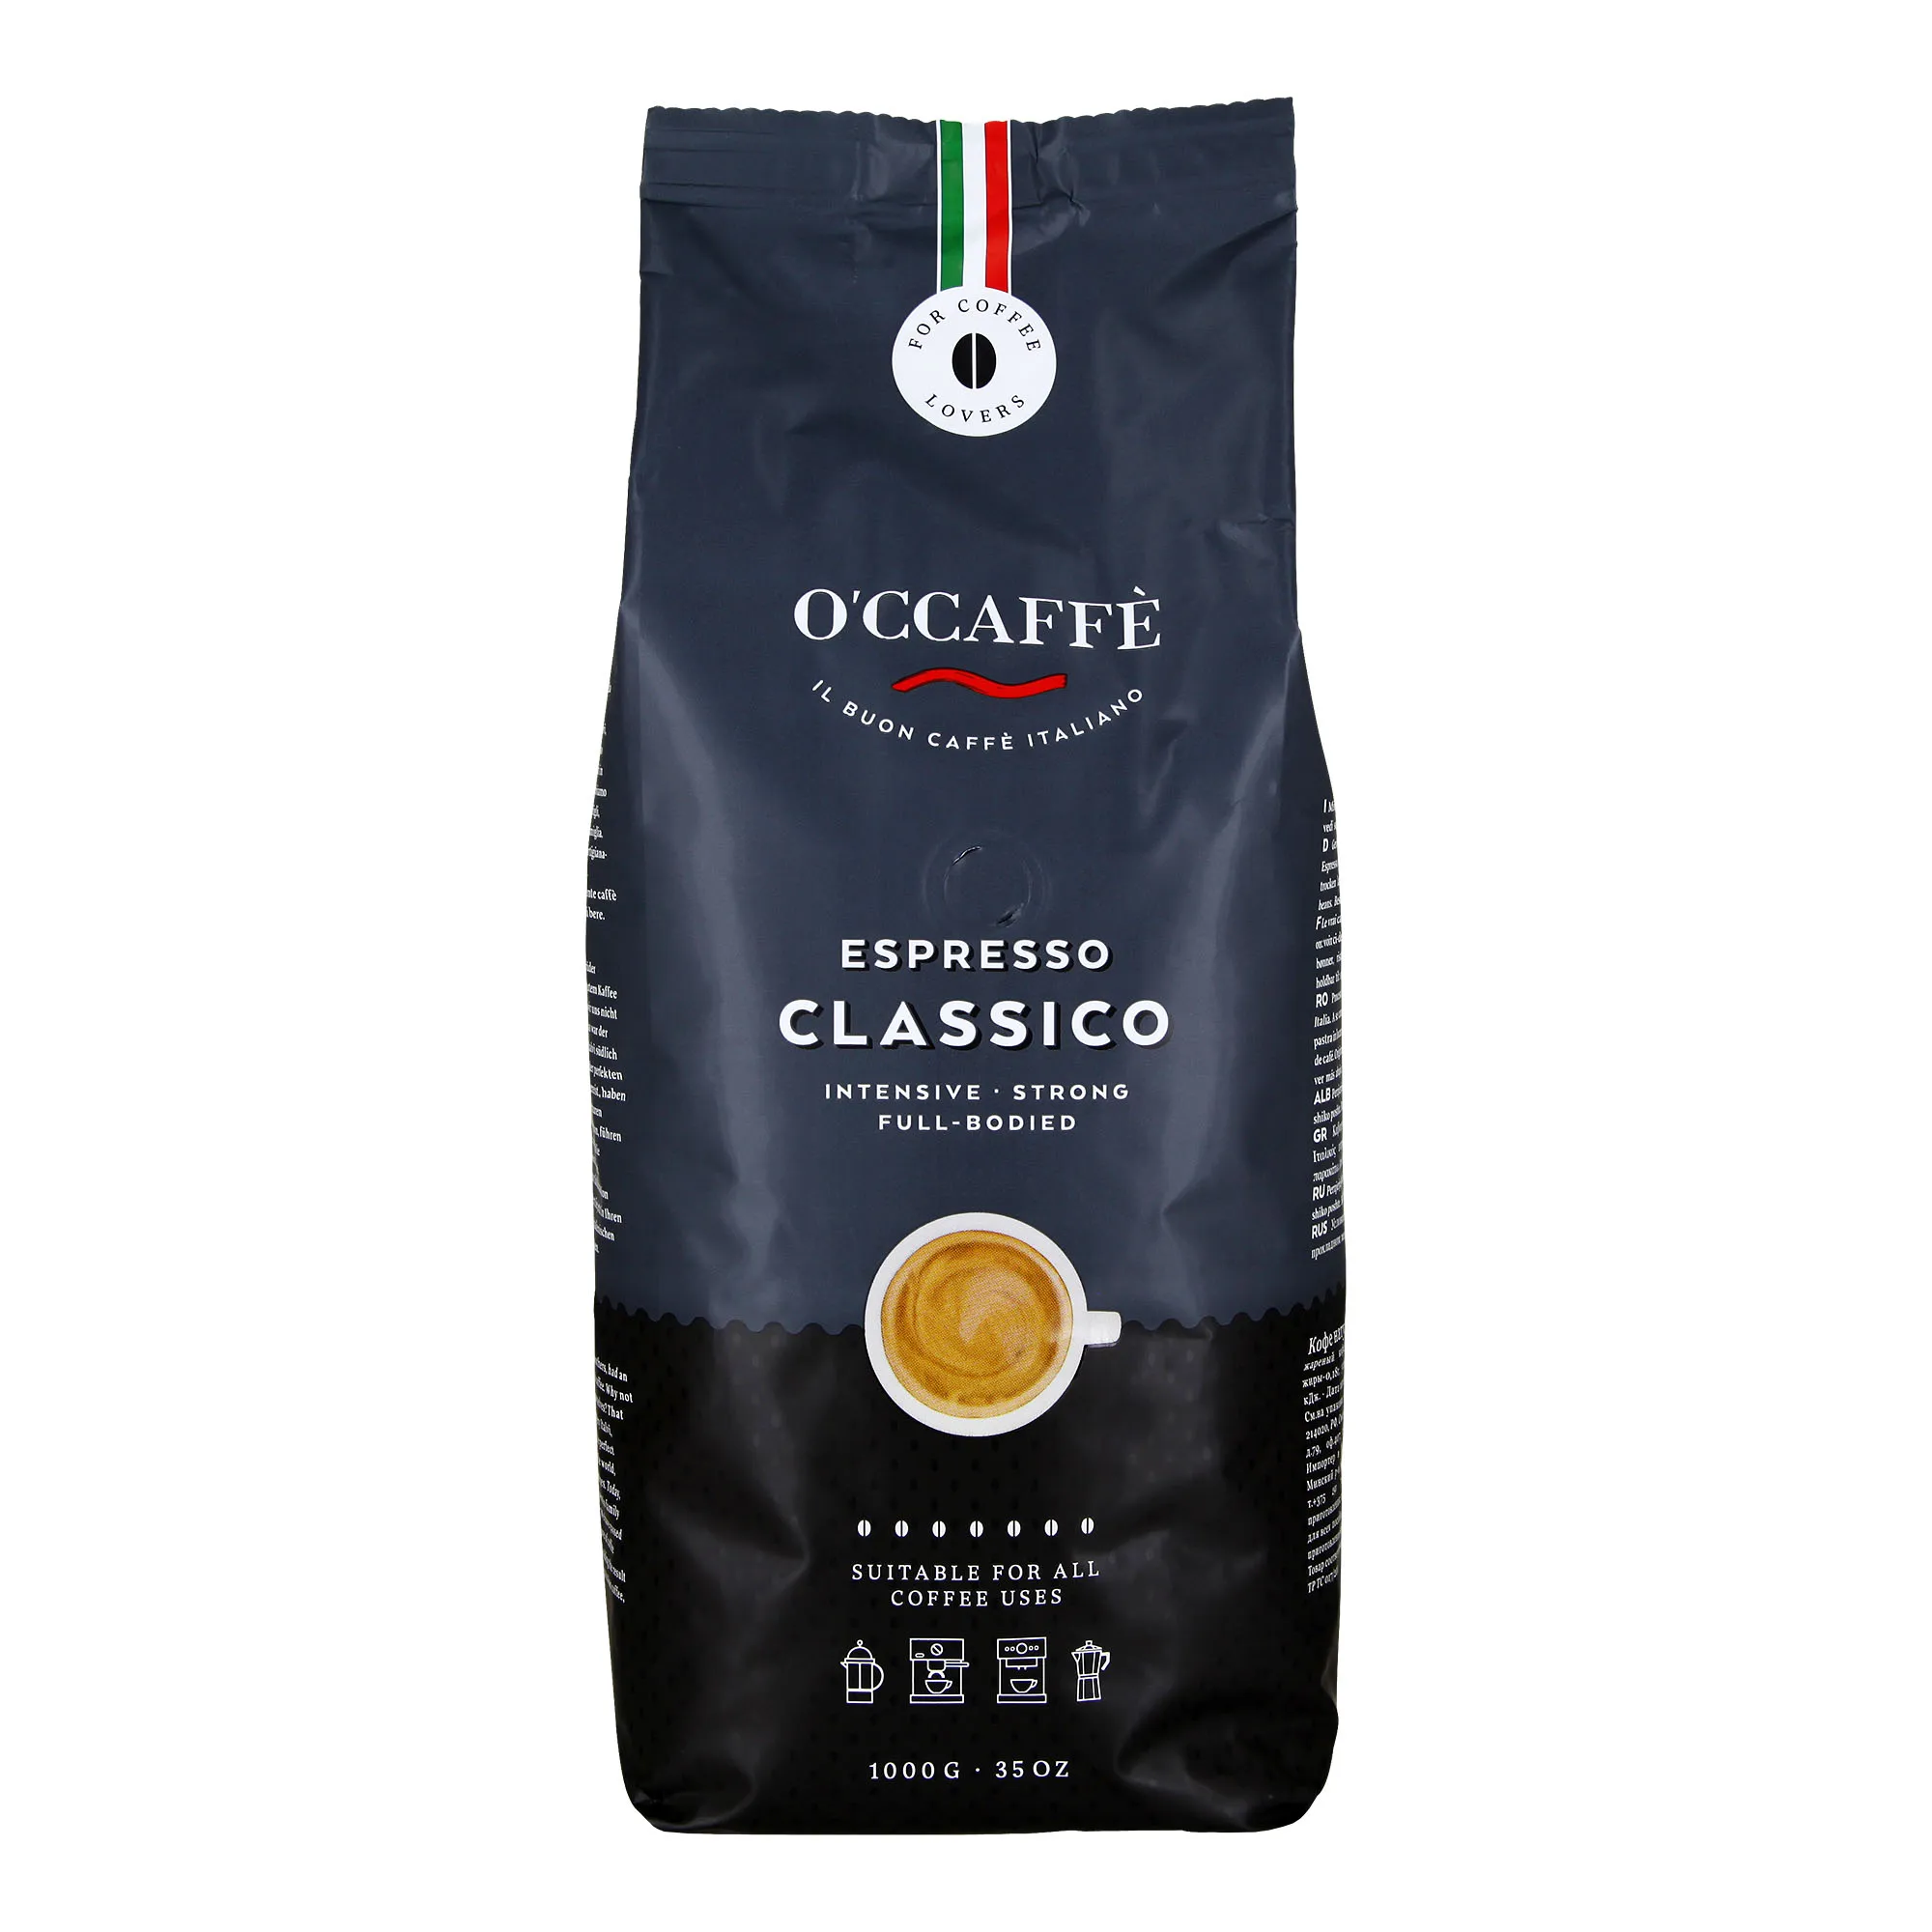 O’ccaffe Espresso Classico 1 kg Italian Espresso Beans